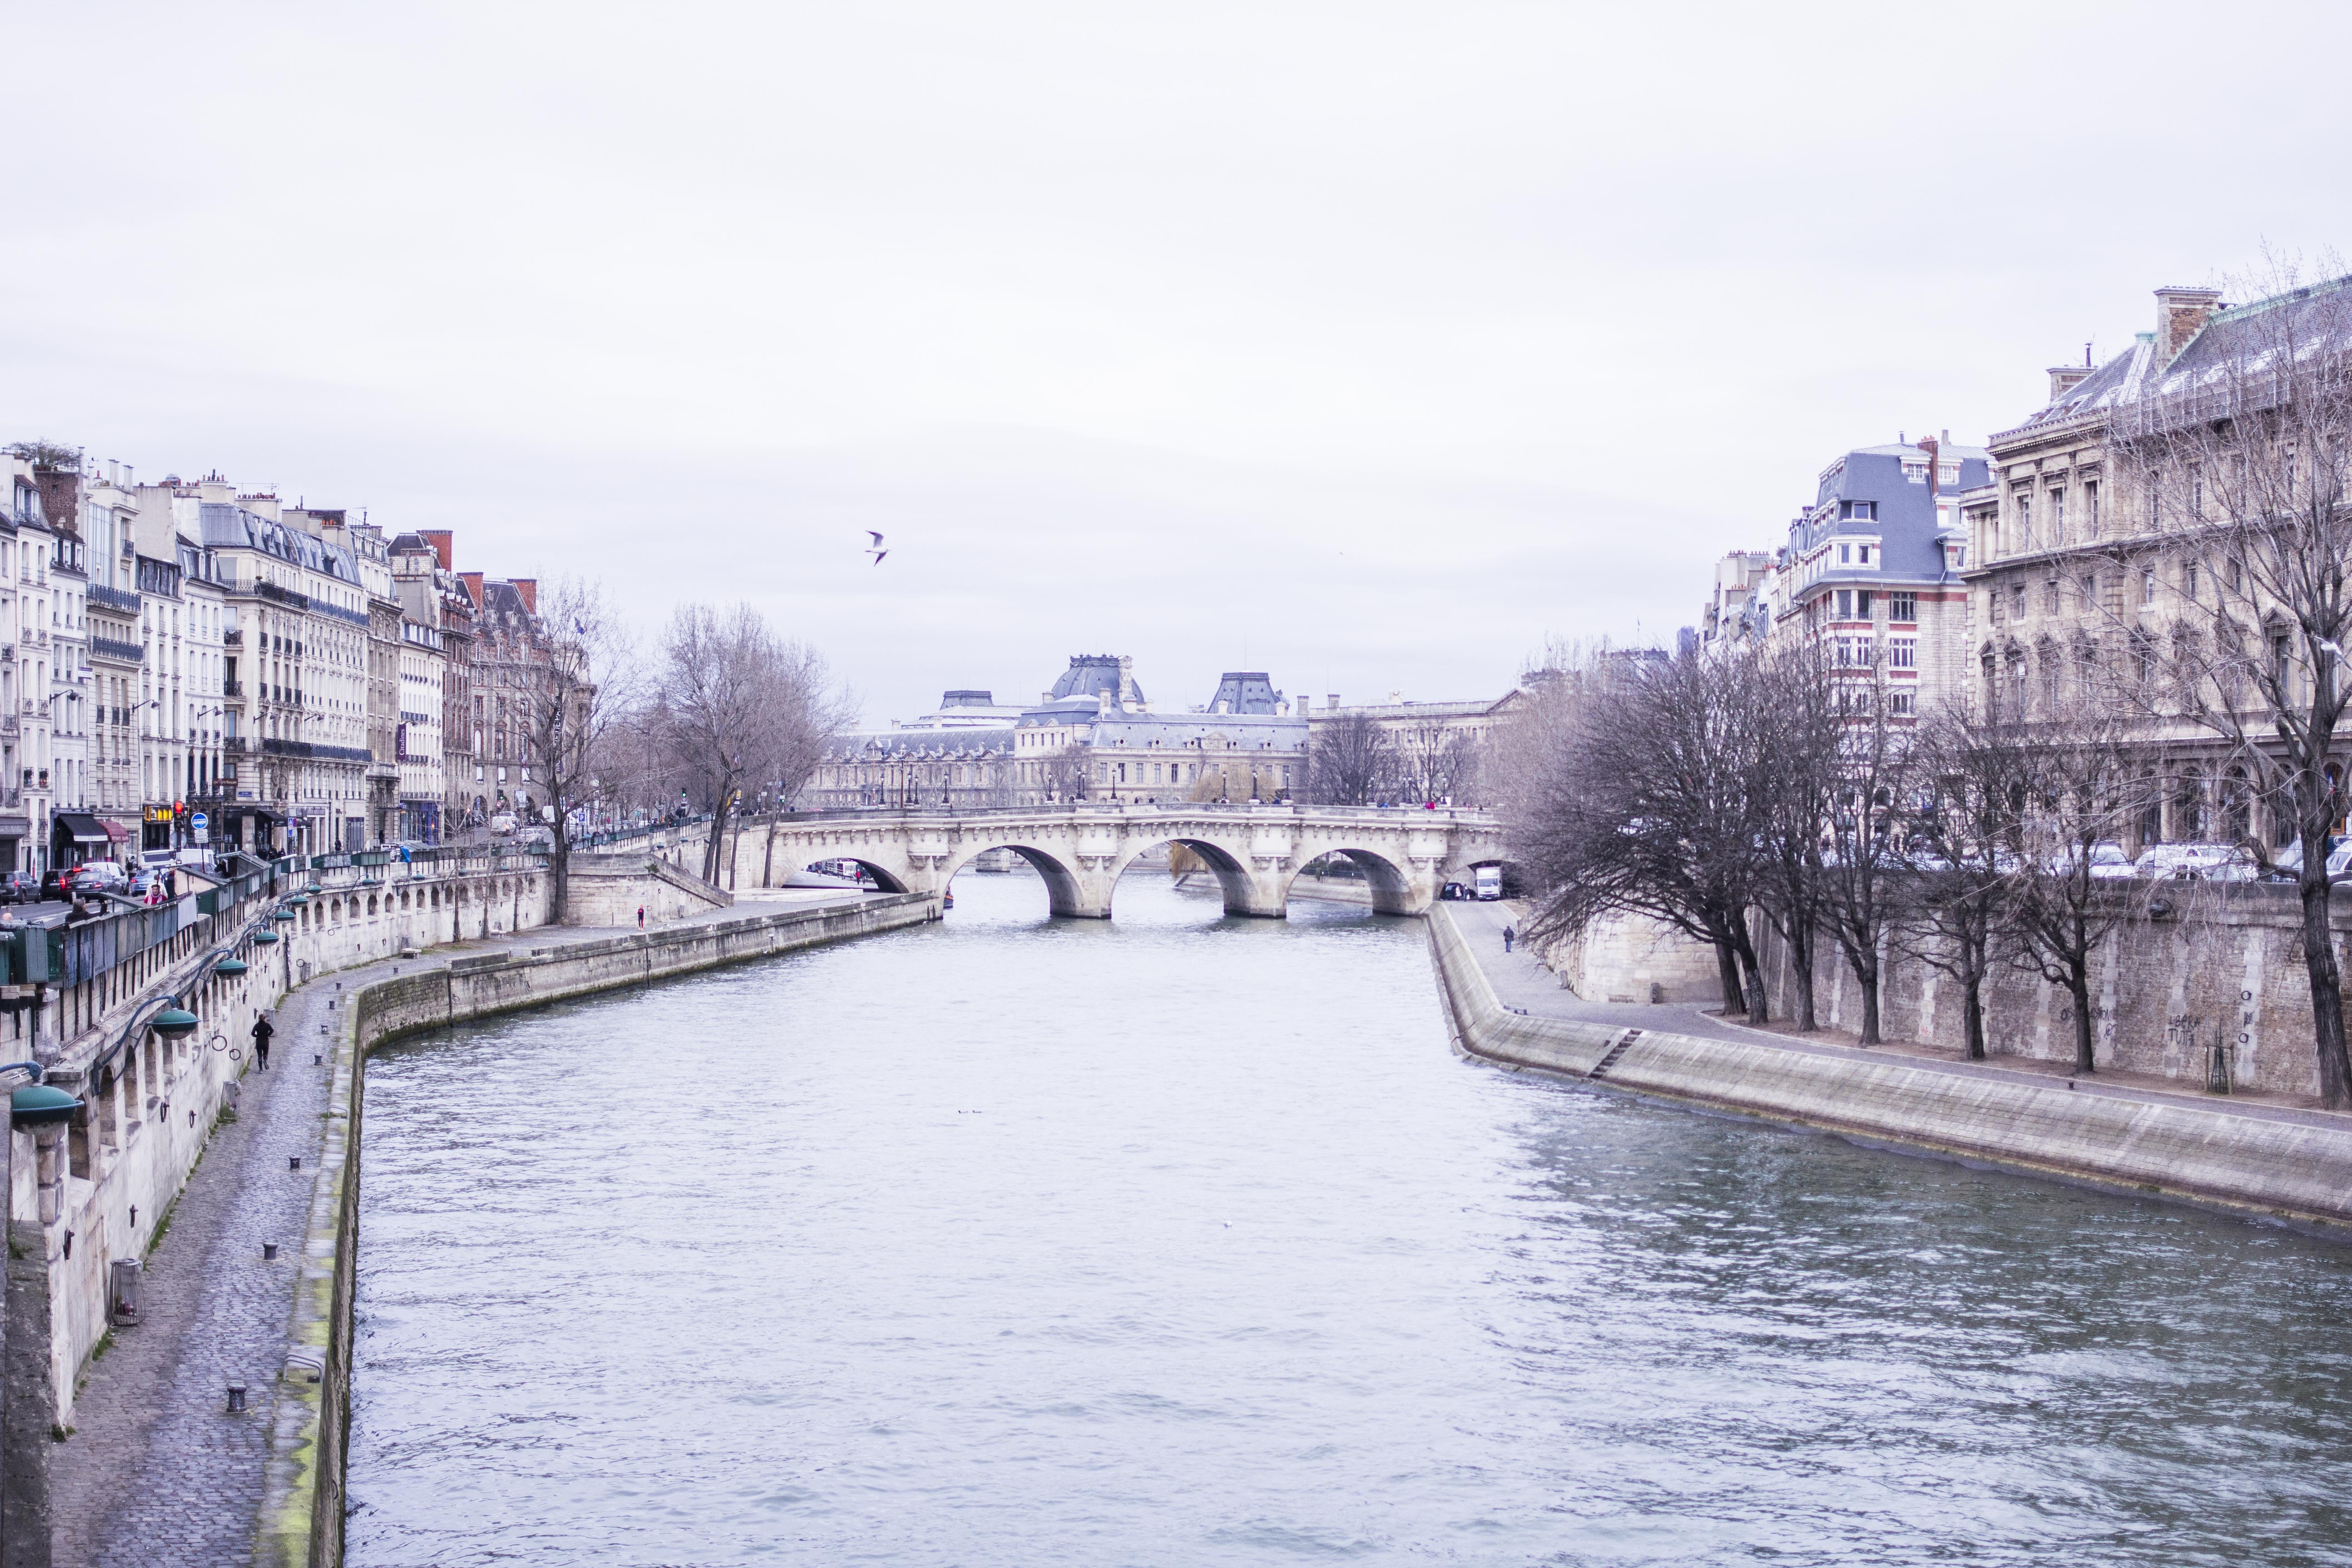 Parisian winter walk